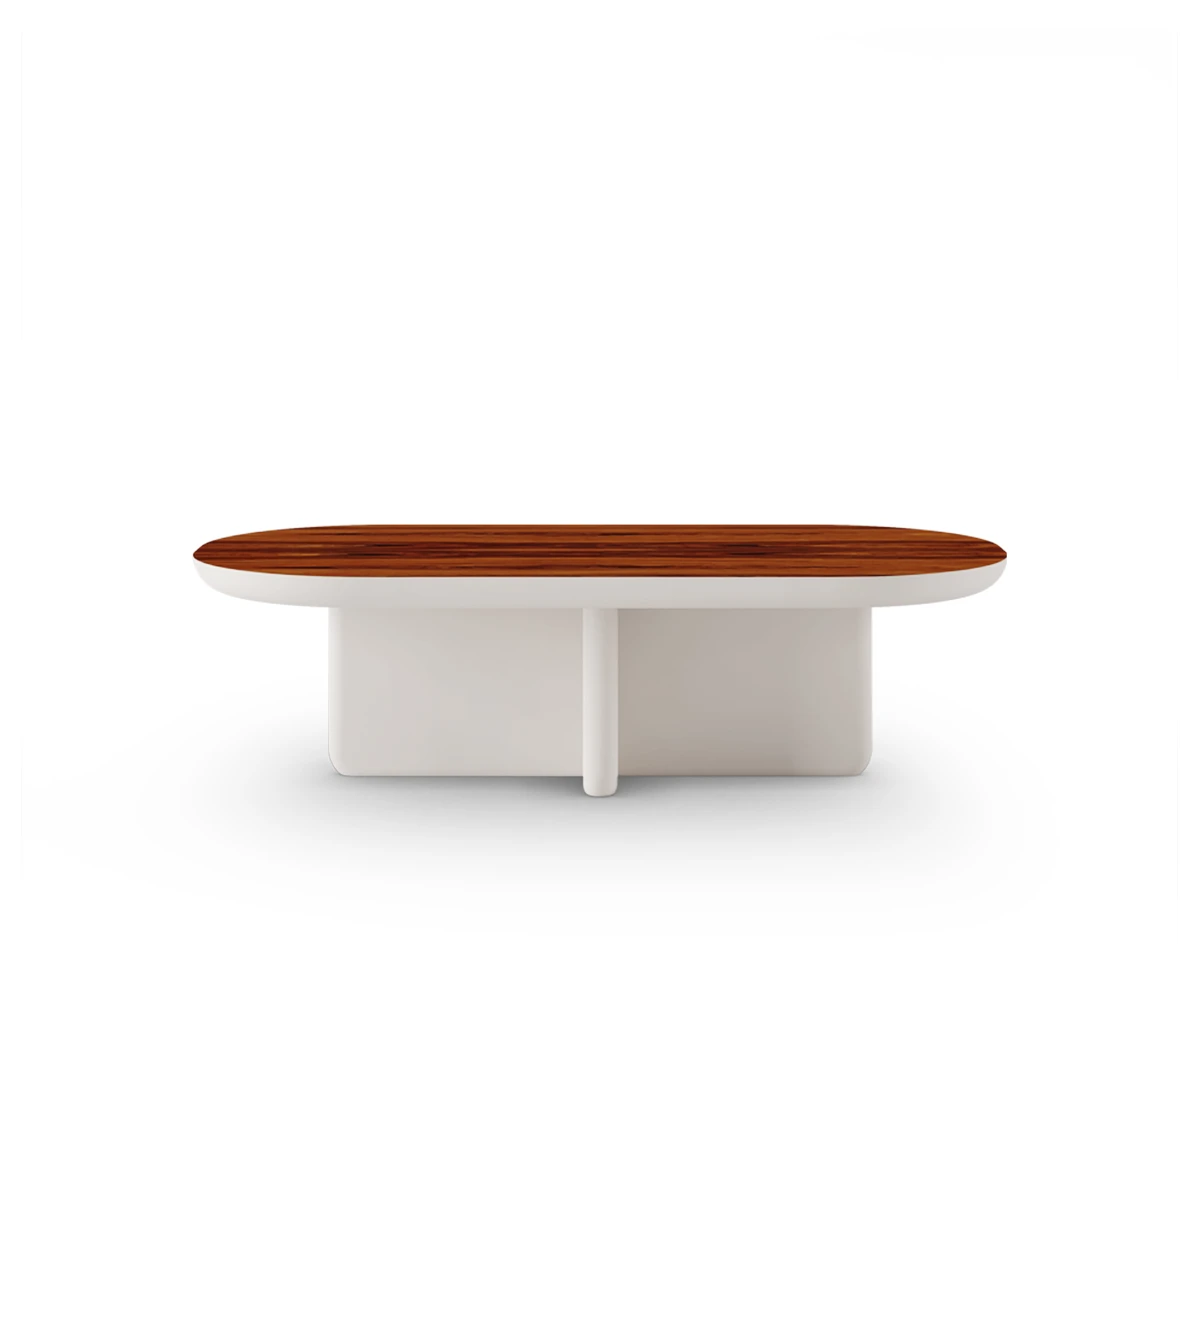 Table basse rectangulaire avec pied en perle laquée et plateau en palissandre brillant.